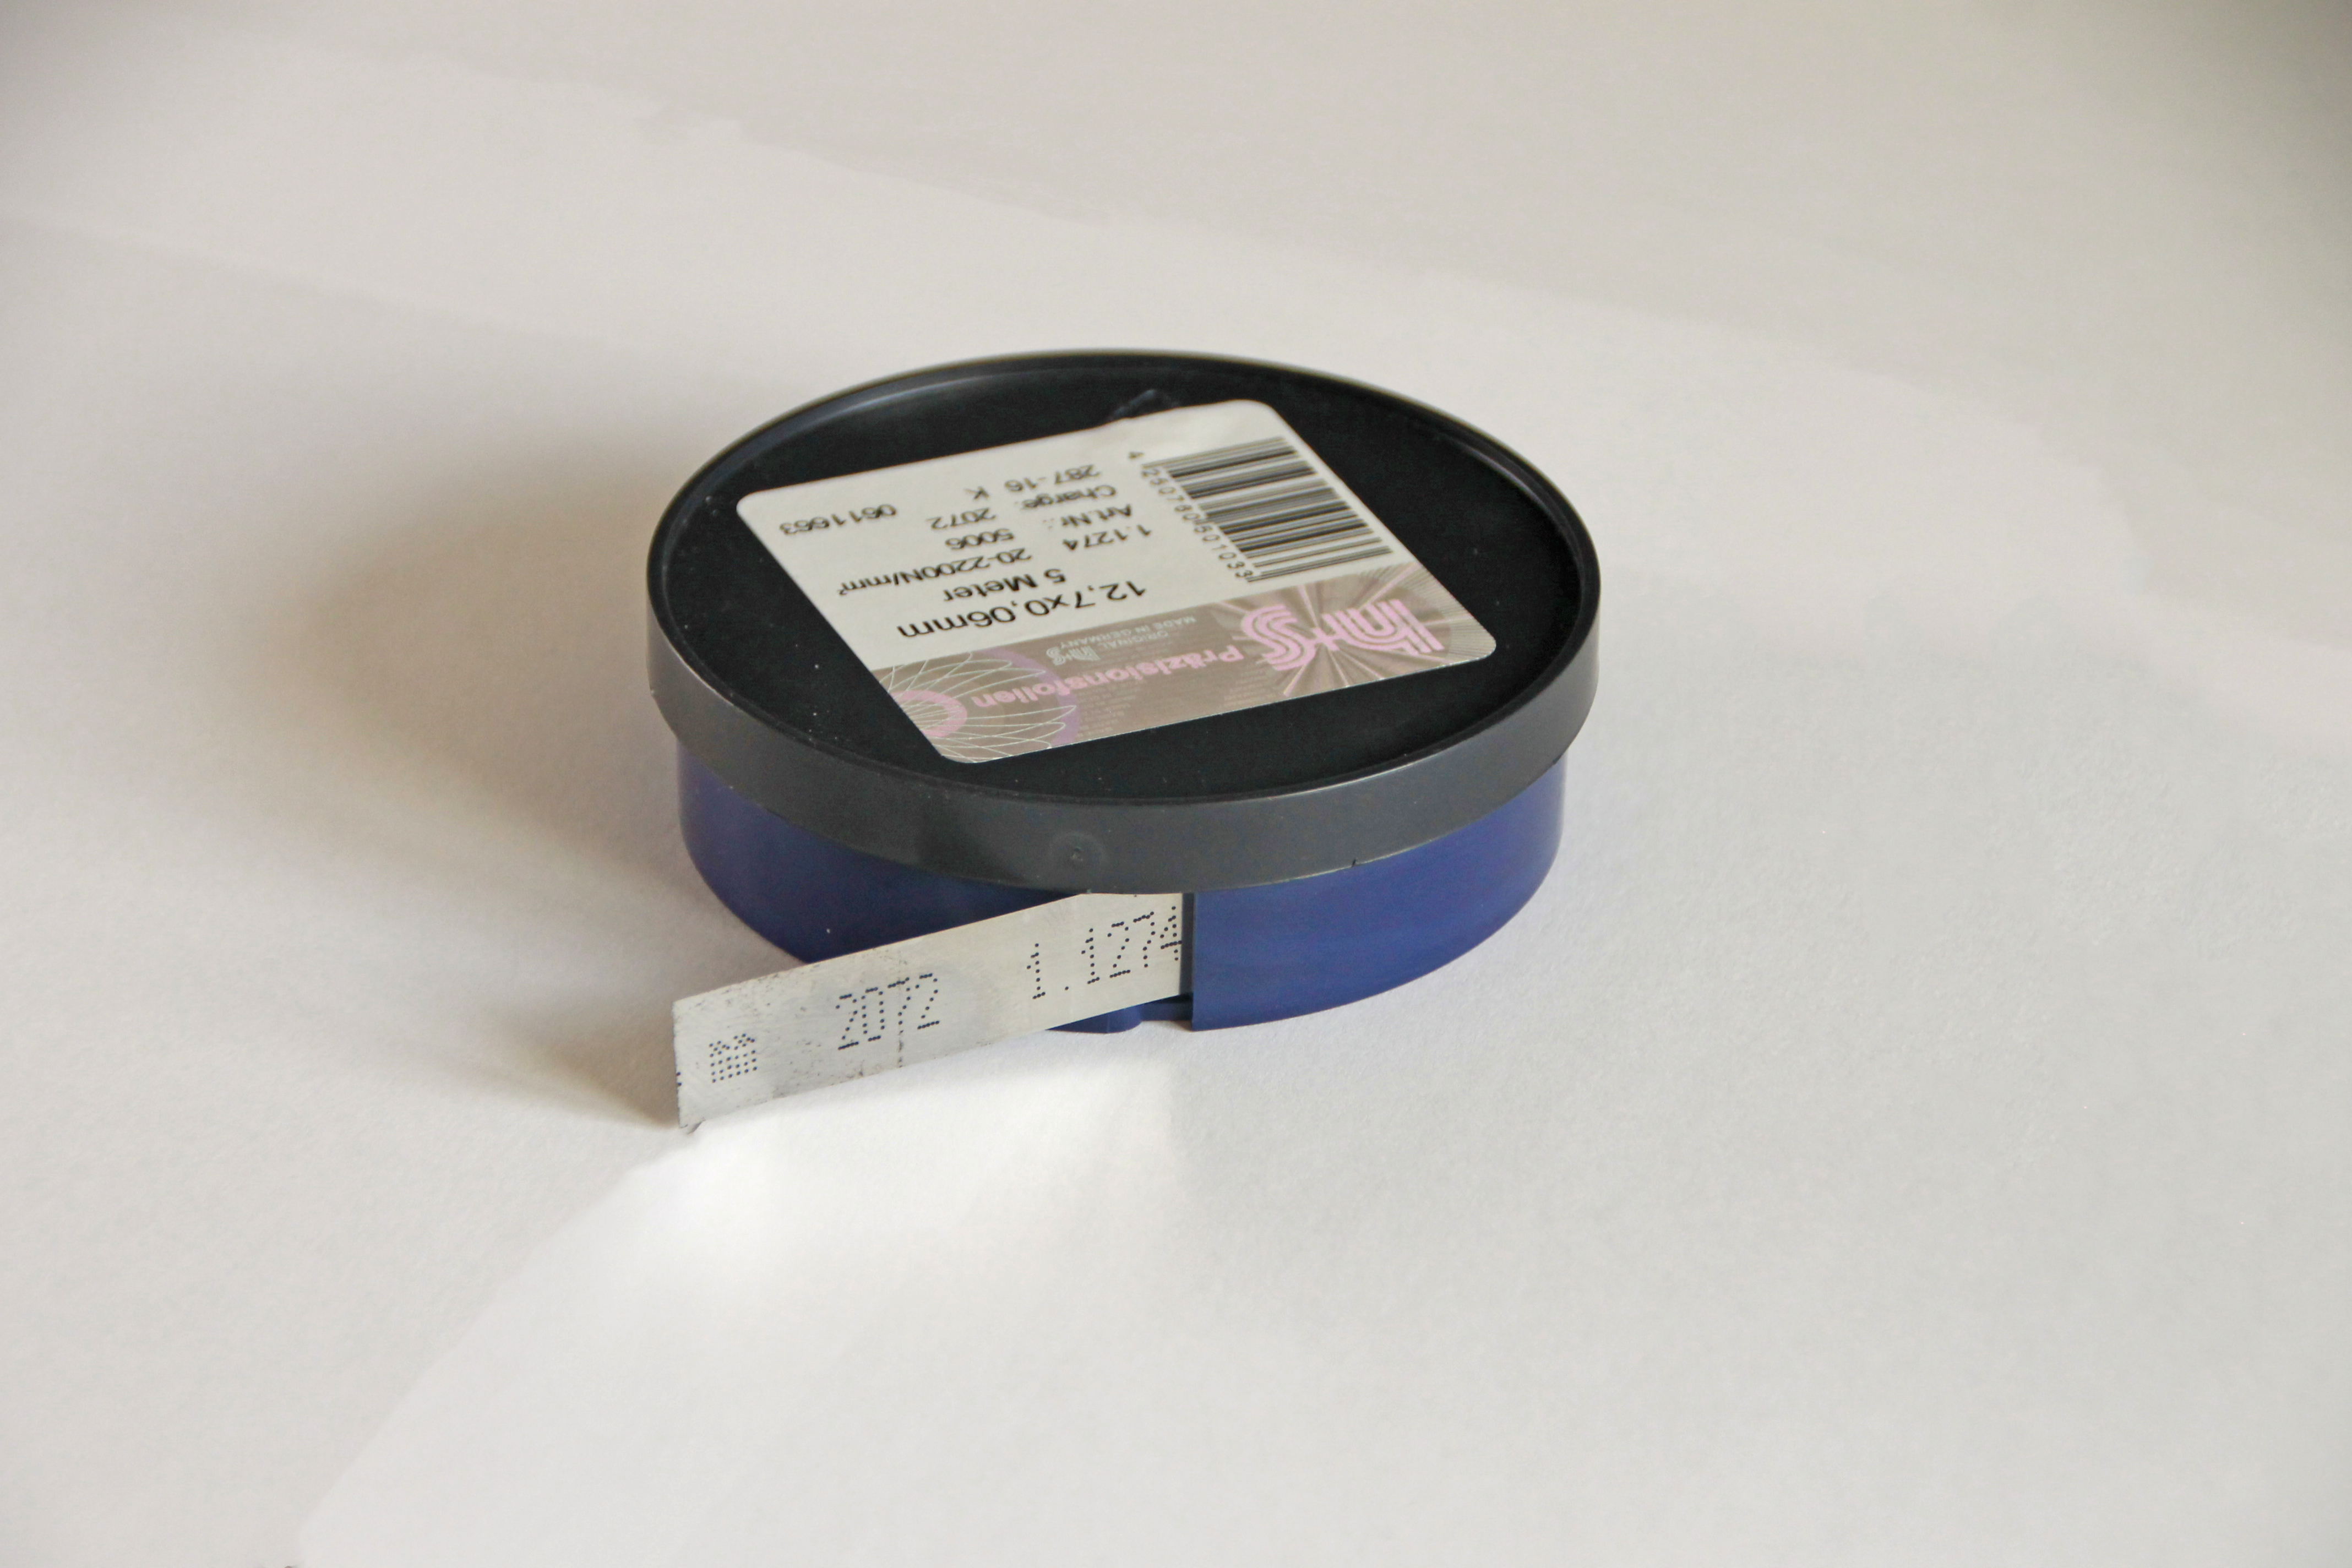 Fühlerlehrenband 0,05 x 6 x 5000 mm Fühlerlehre Federstahlband 1.1274 